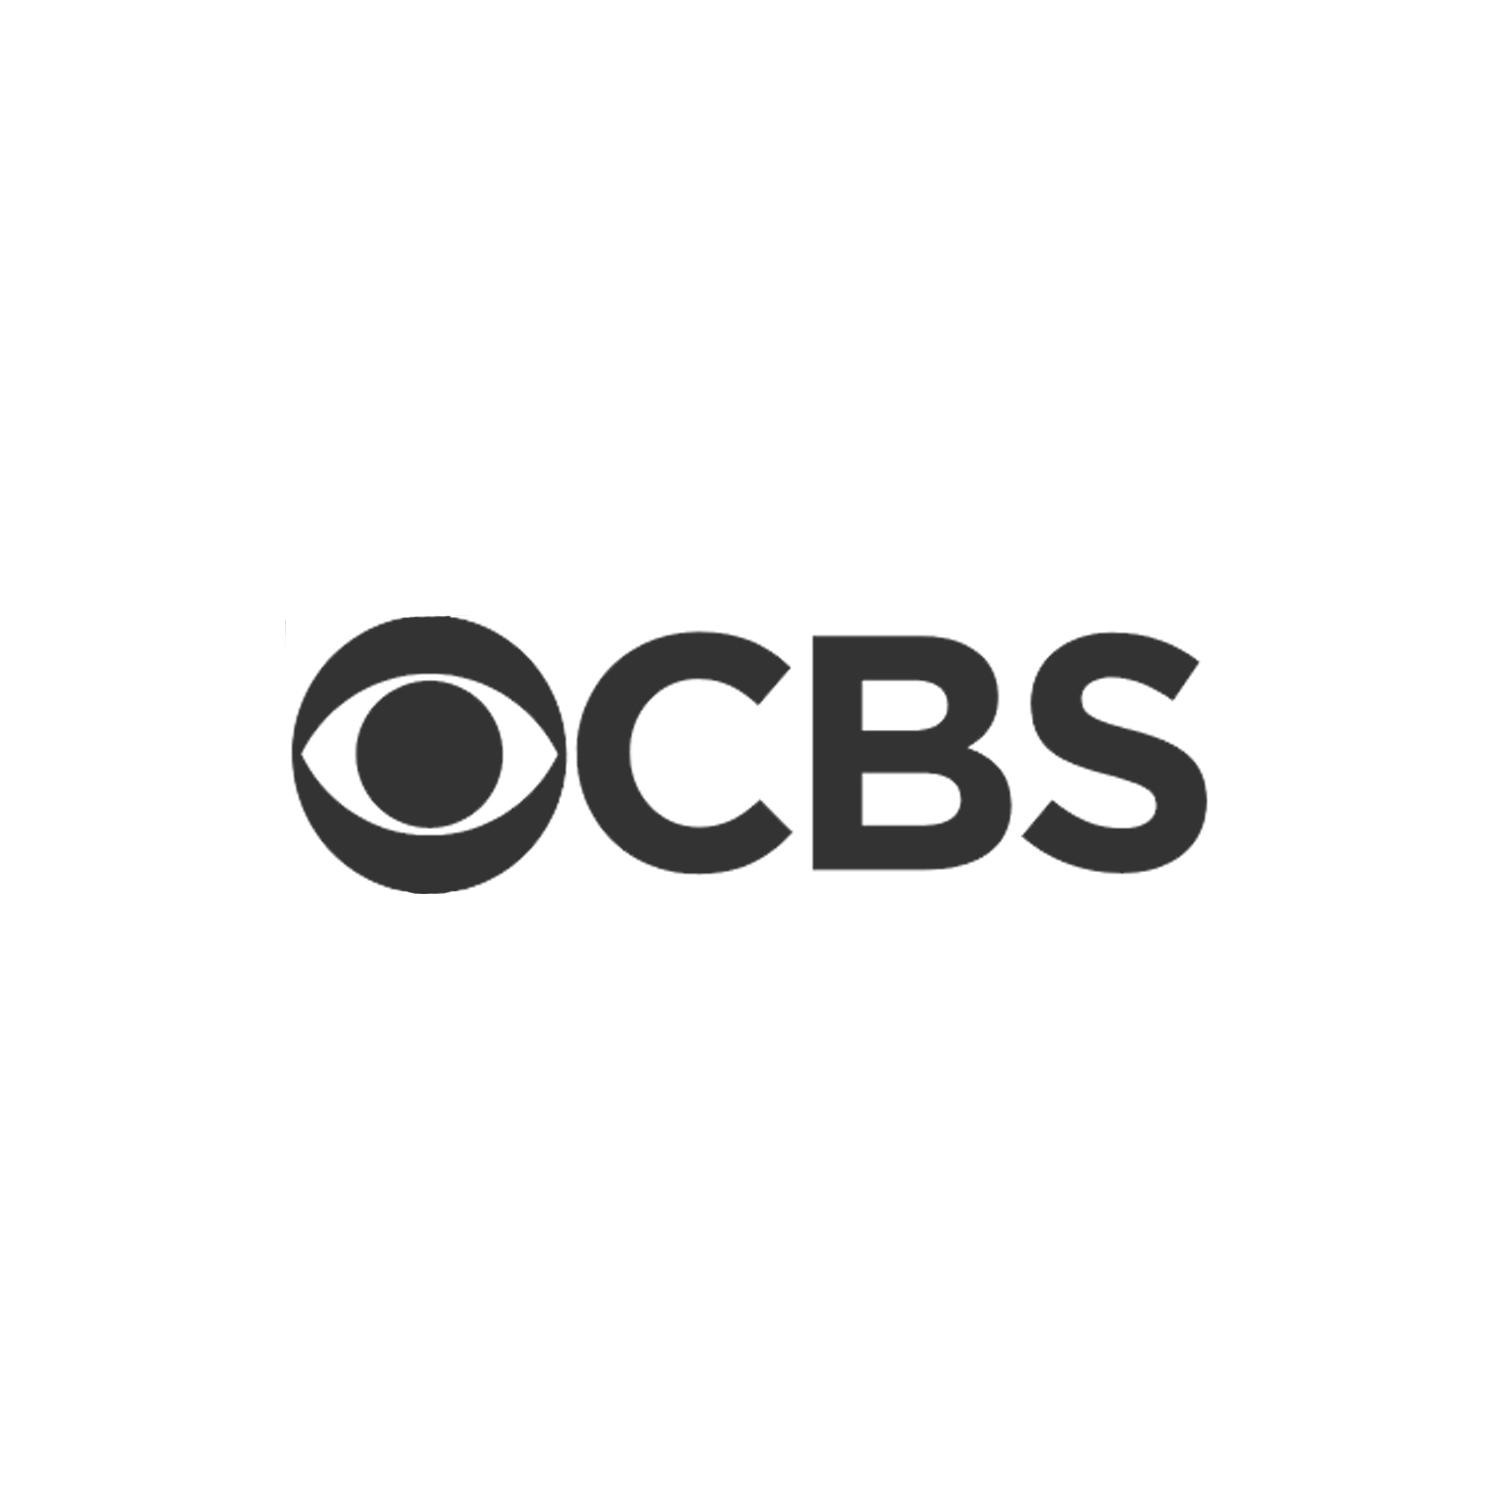 CBS-logo.png